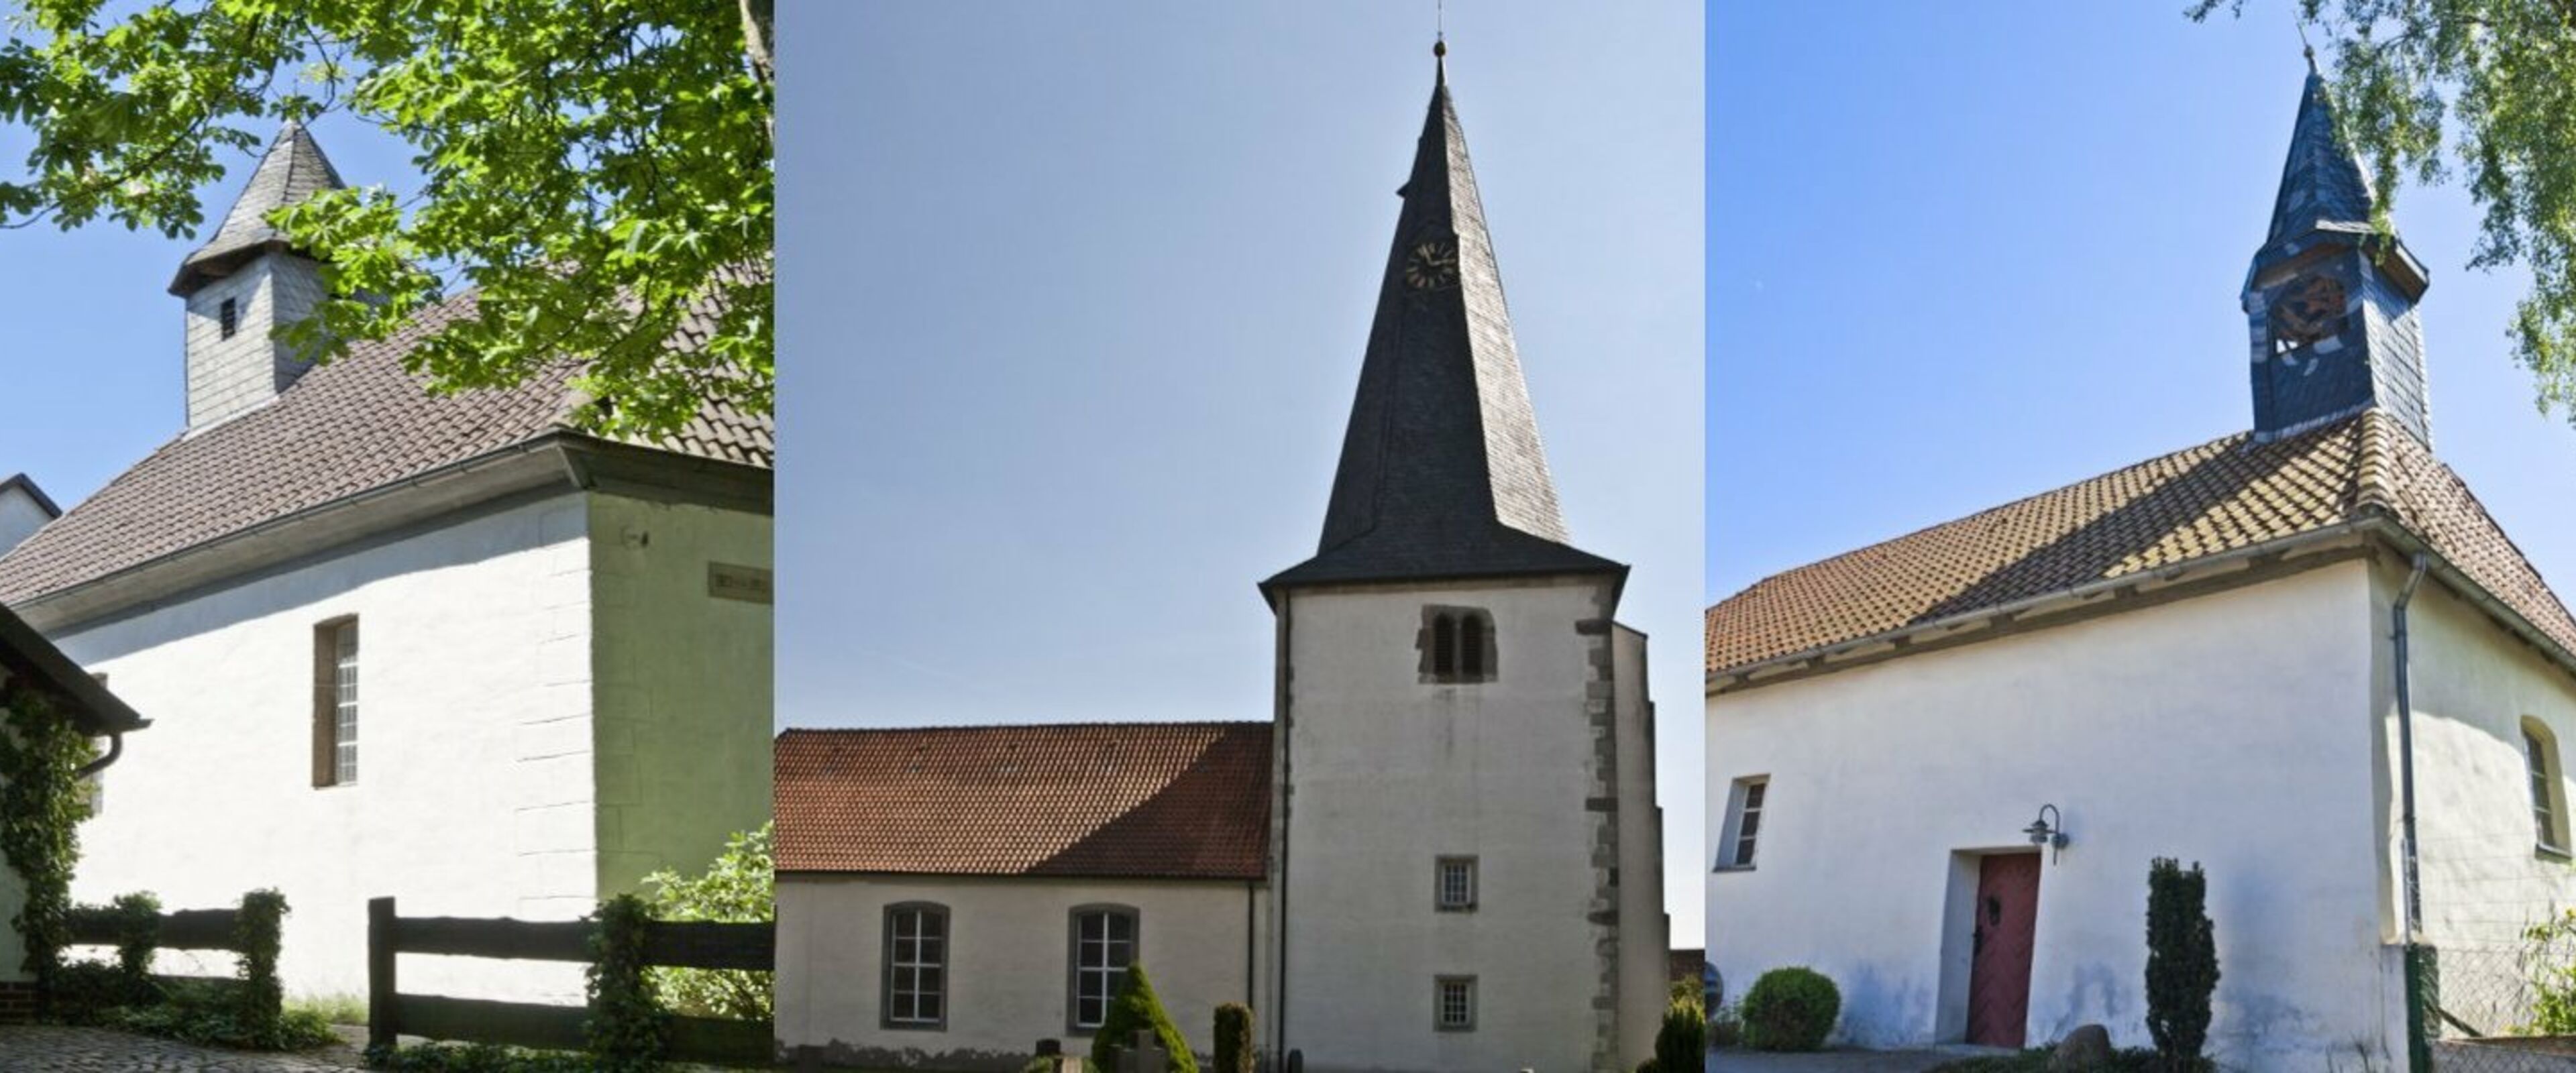 Collage für Startseite, Kirchen Ummeln, Hotteln, Wätzum